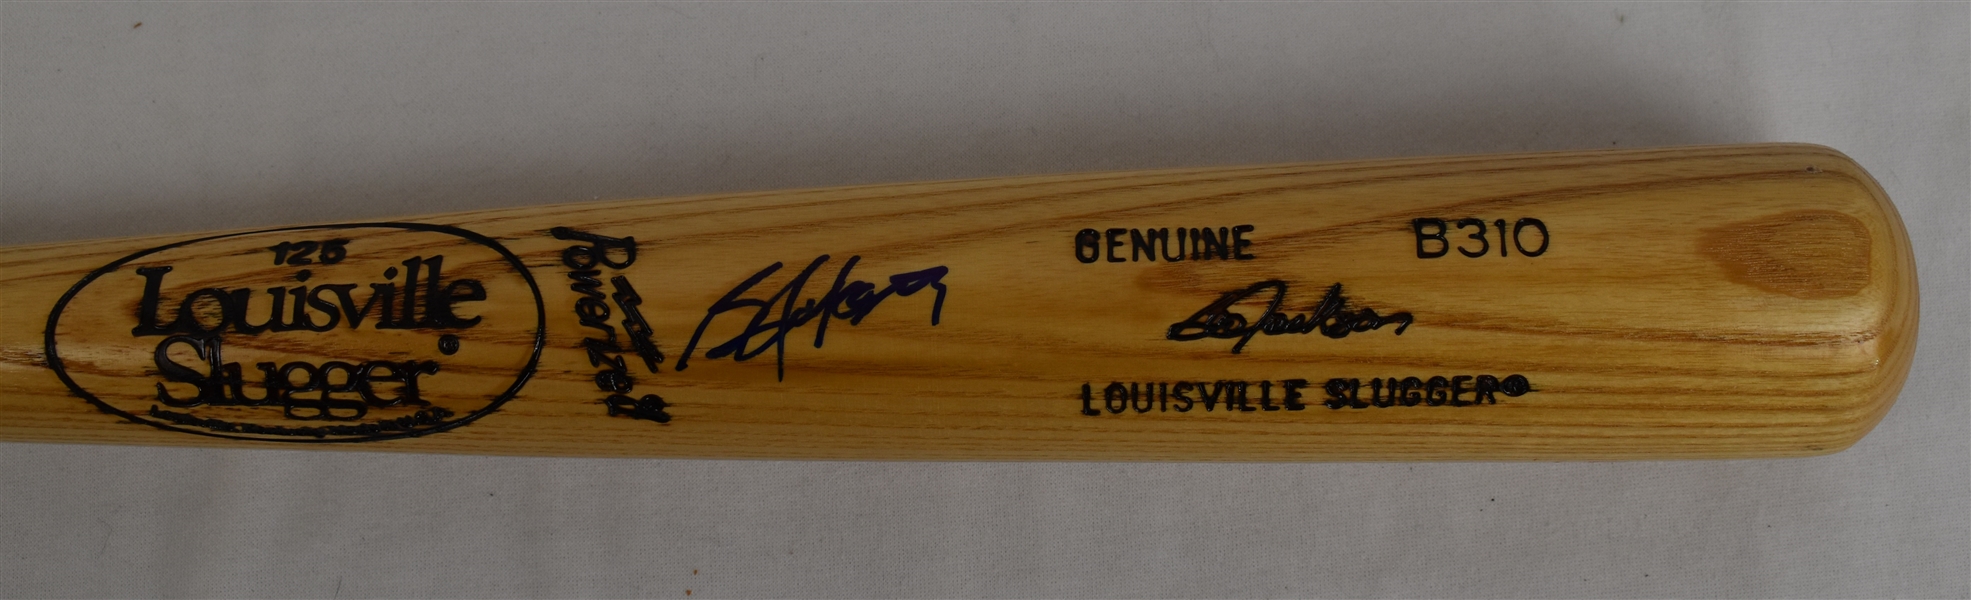 Bo Jackson Autographed Louisville Slugger Baseball Bat 